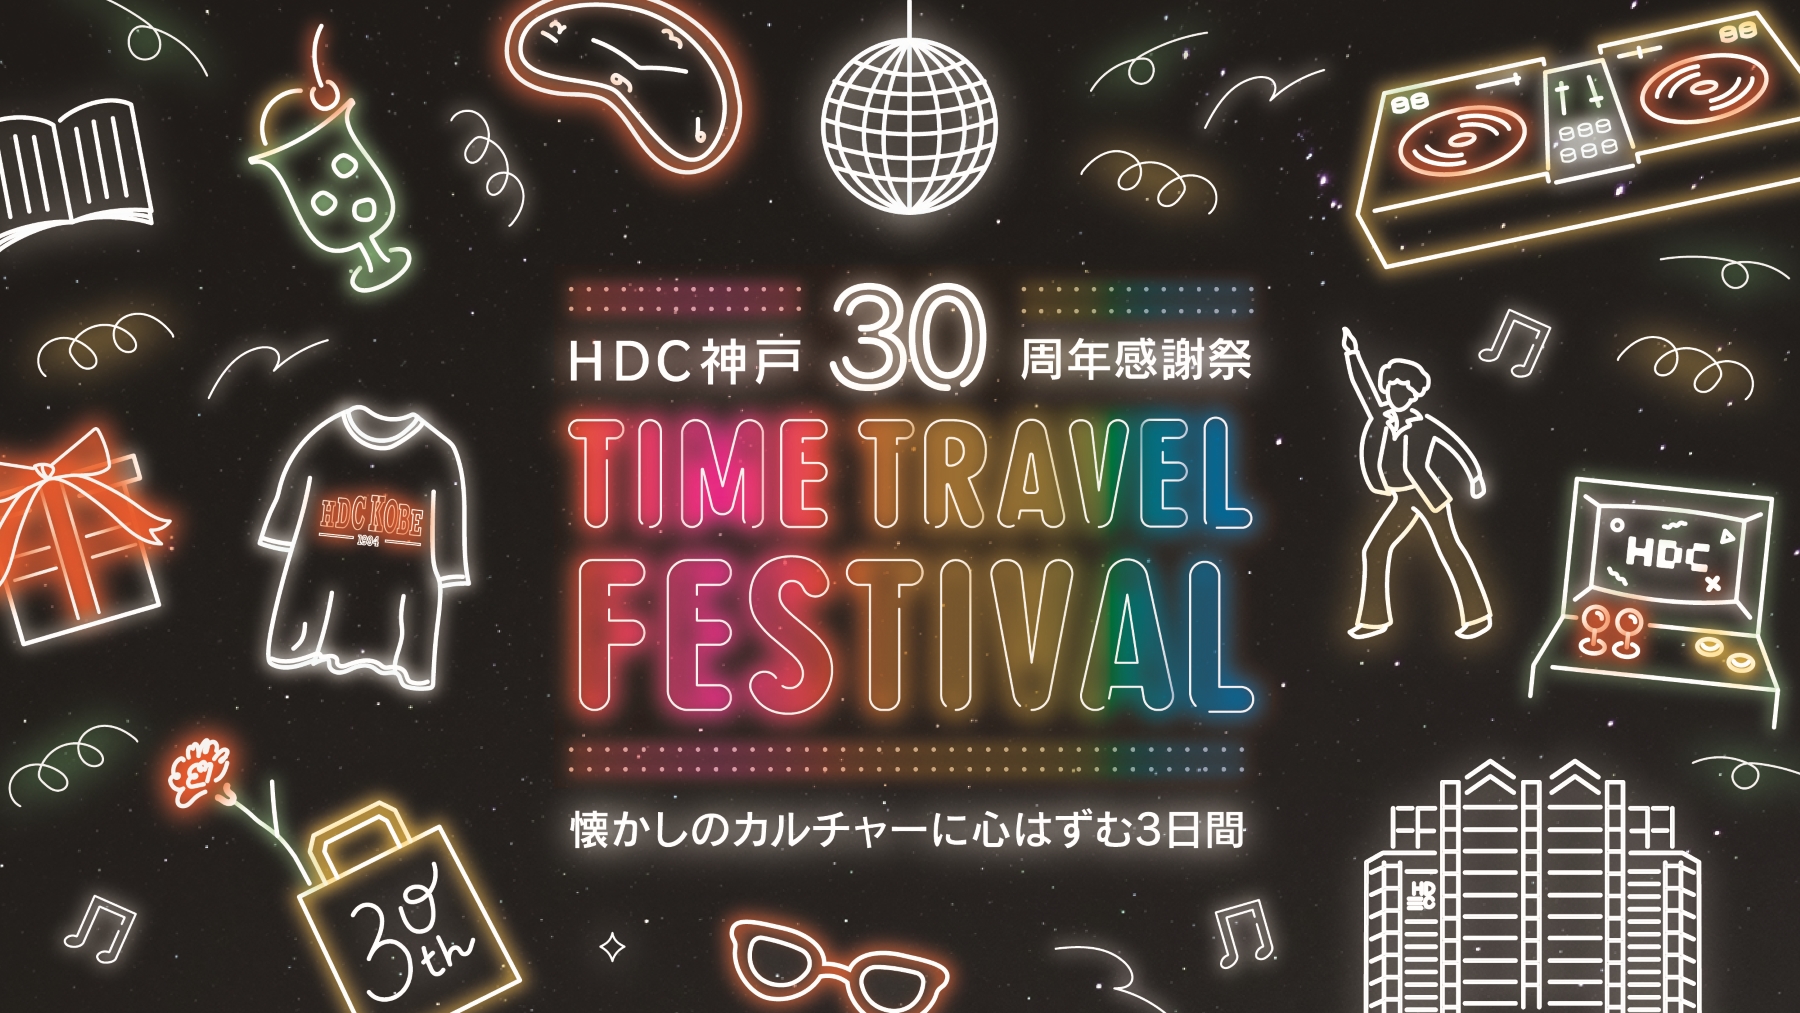 世界最高齢DJの DJ SUMIROCK 登場！！ HDC神戸にて30周年イベントを開催！